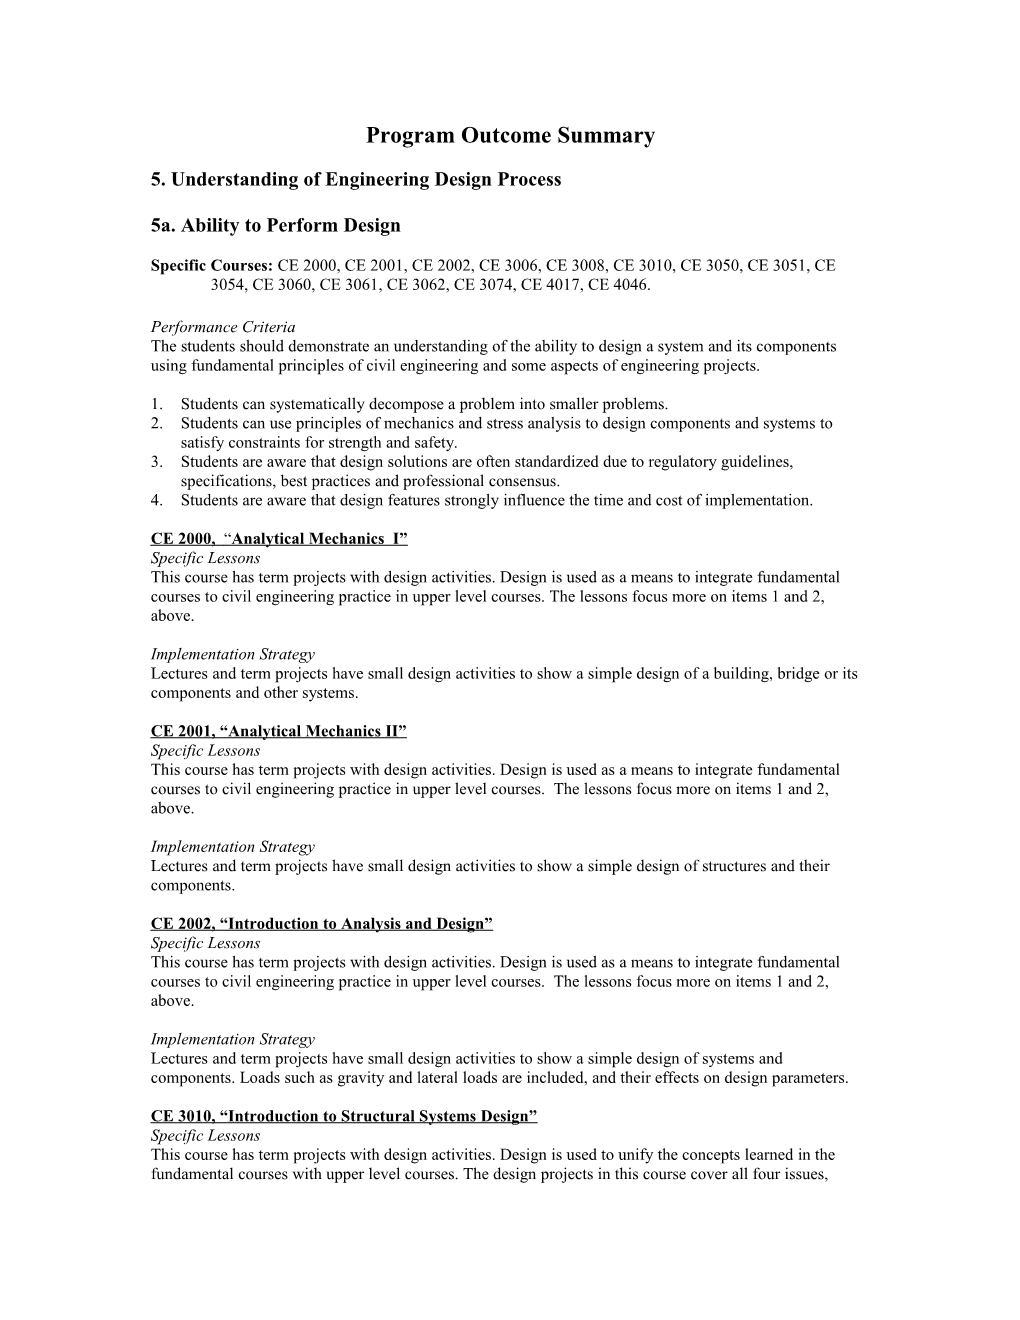 5. Understanding of Engineering Design Process